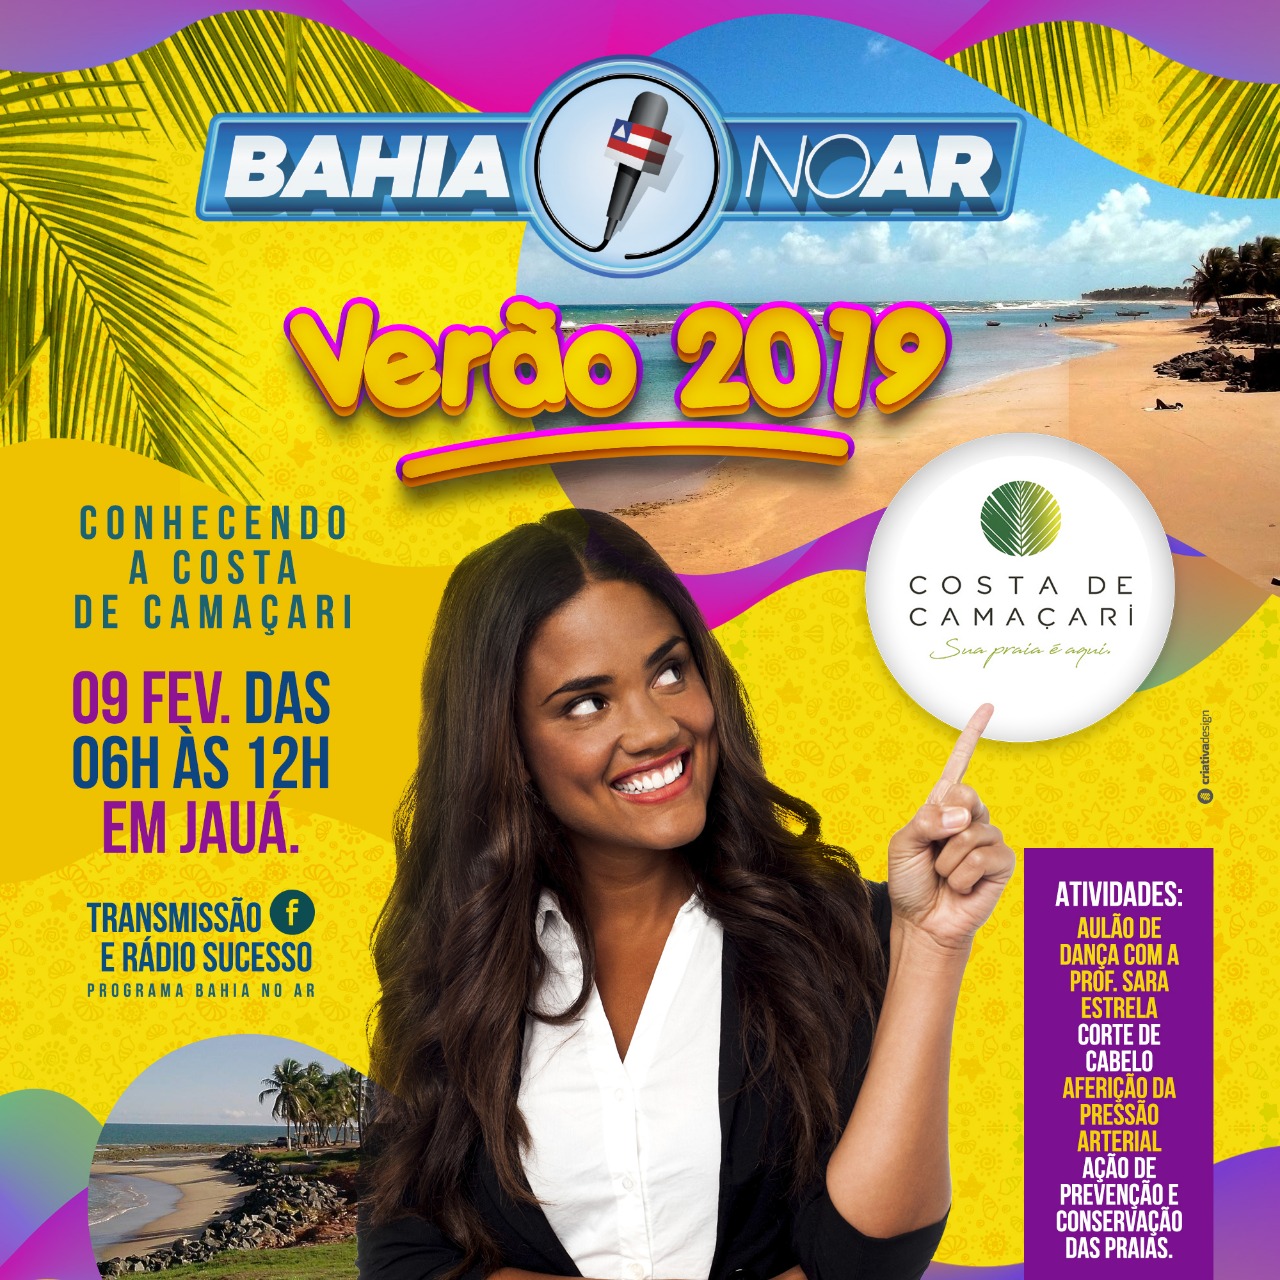 Bahia no Ar Verão oferecerá serviços gratuitos para o público em Jauá